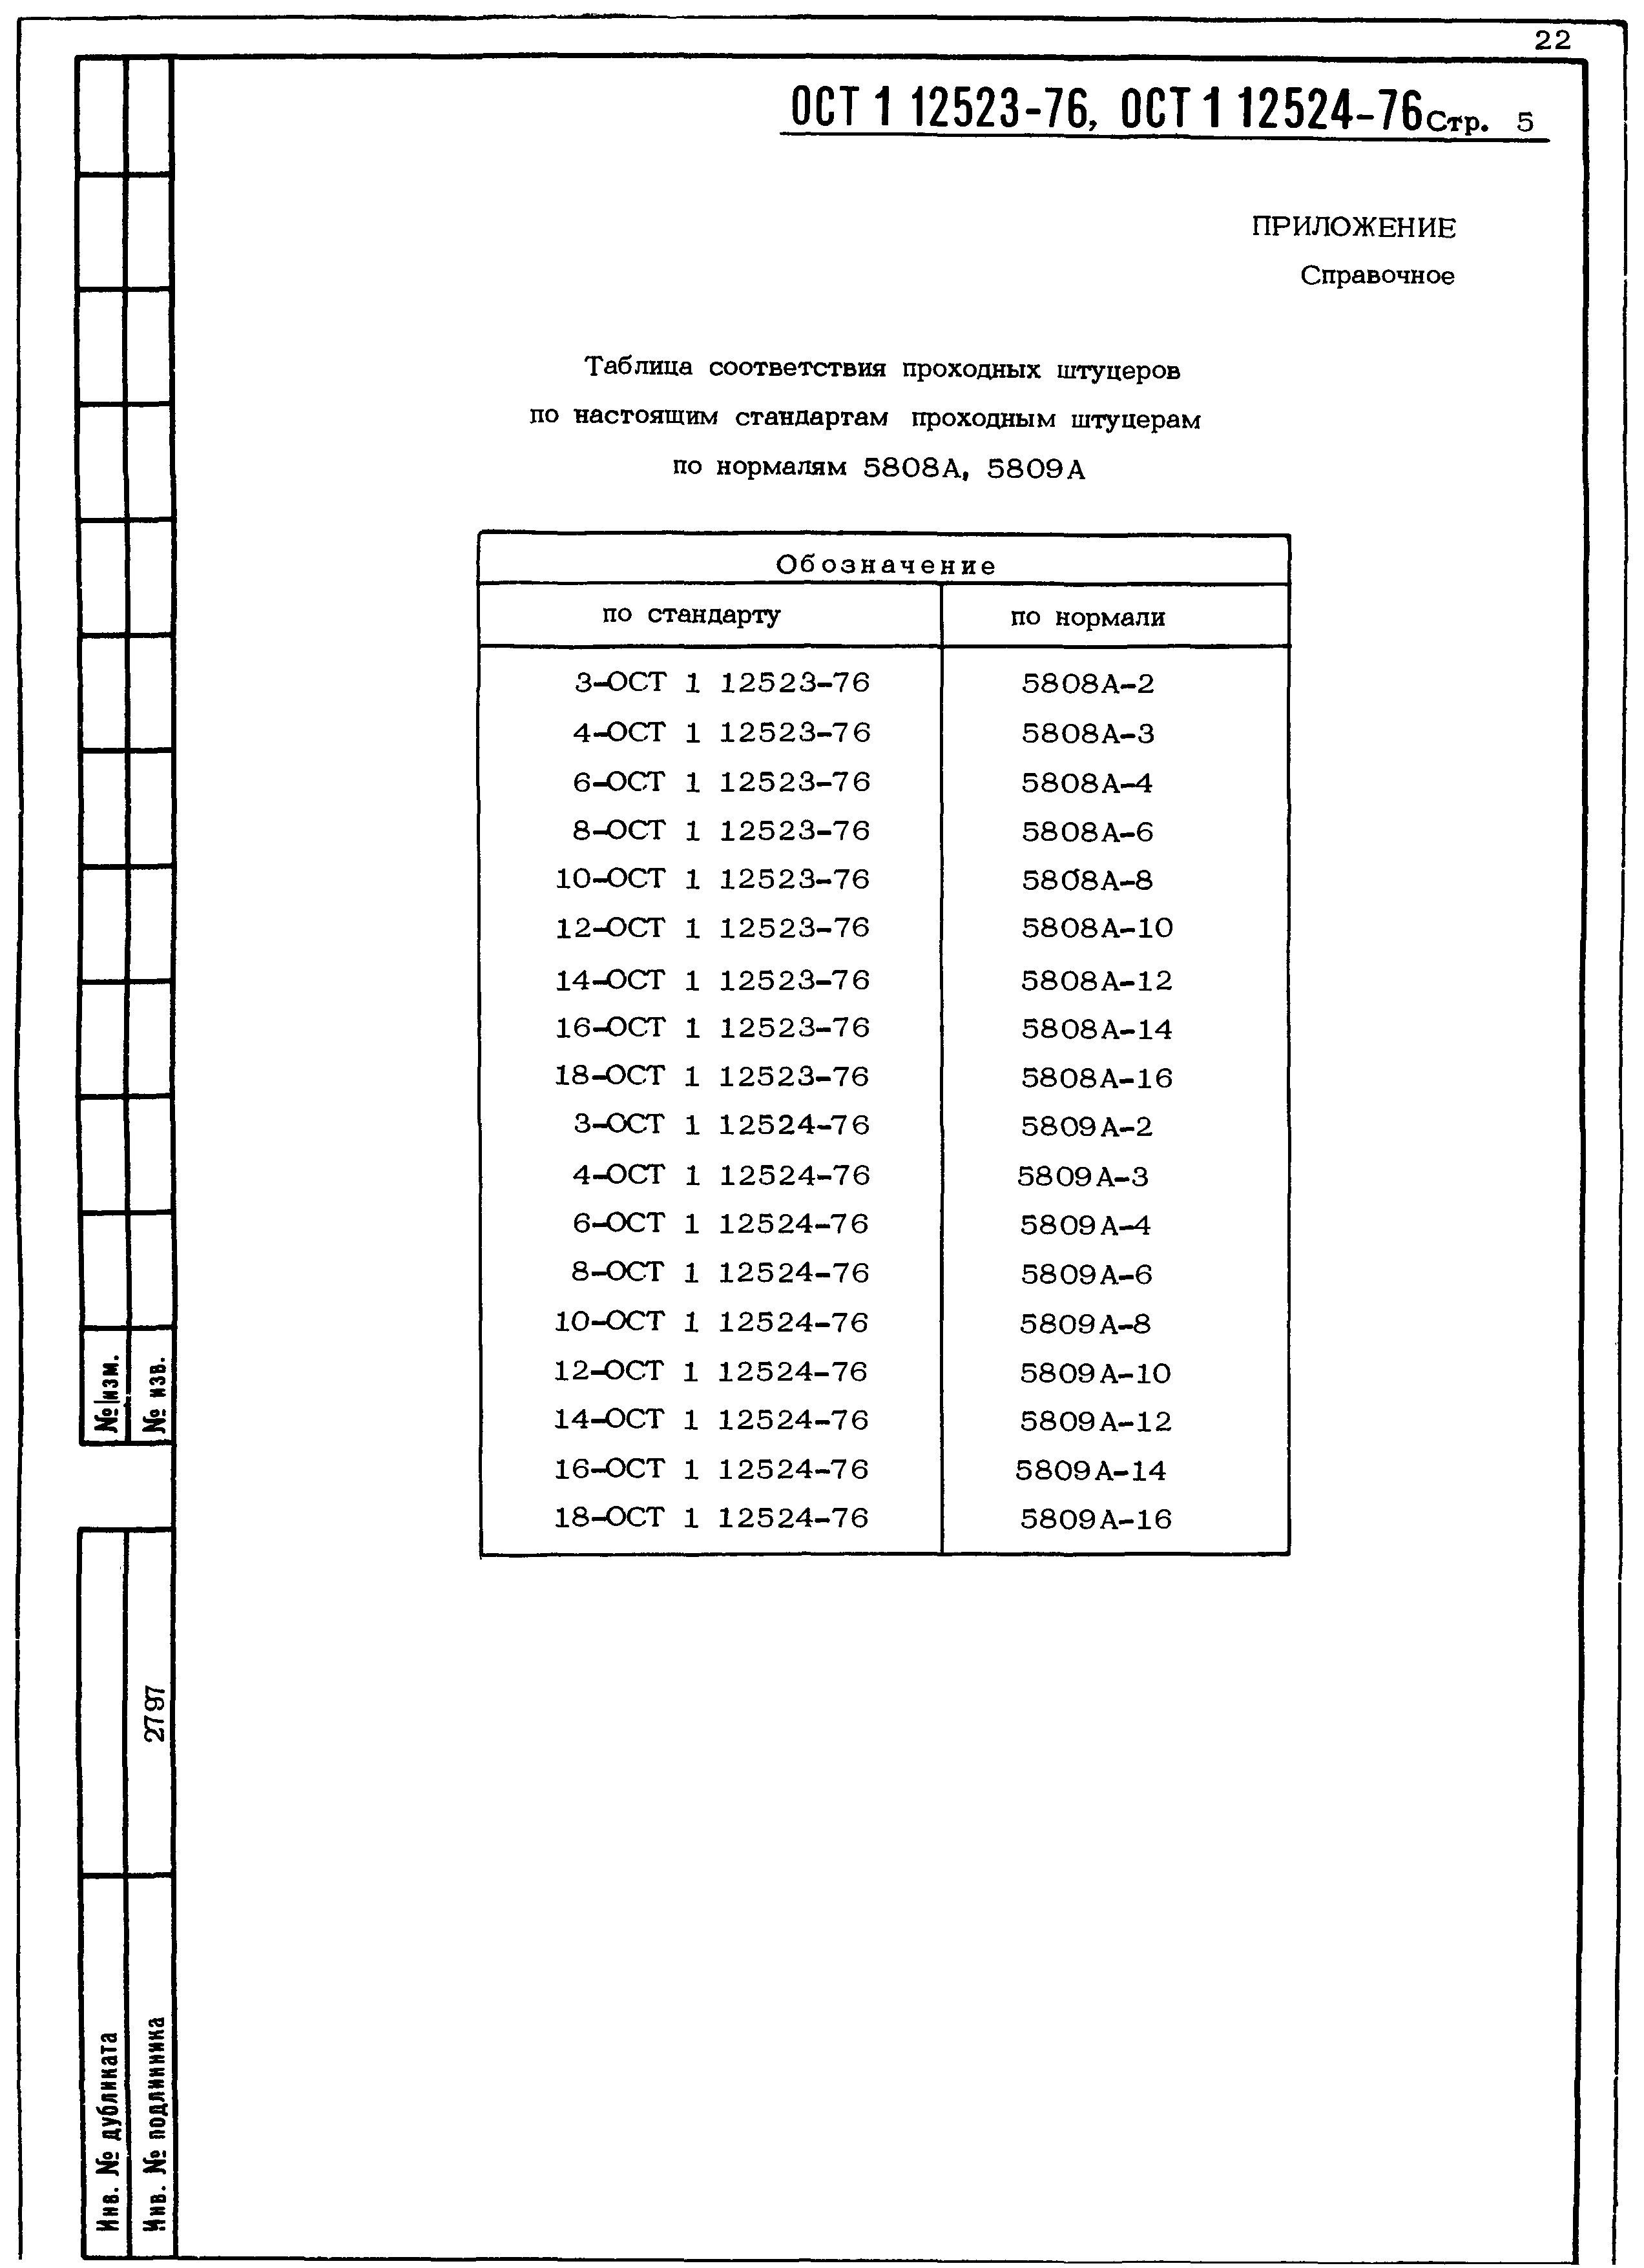 ОСТ 1 12523-76